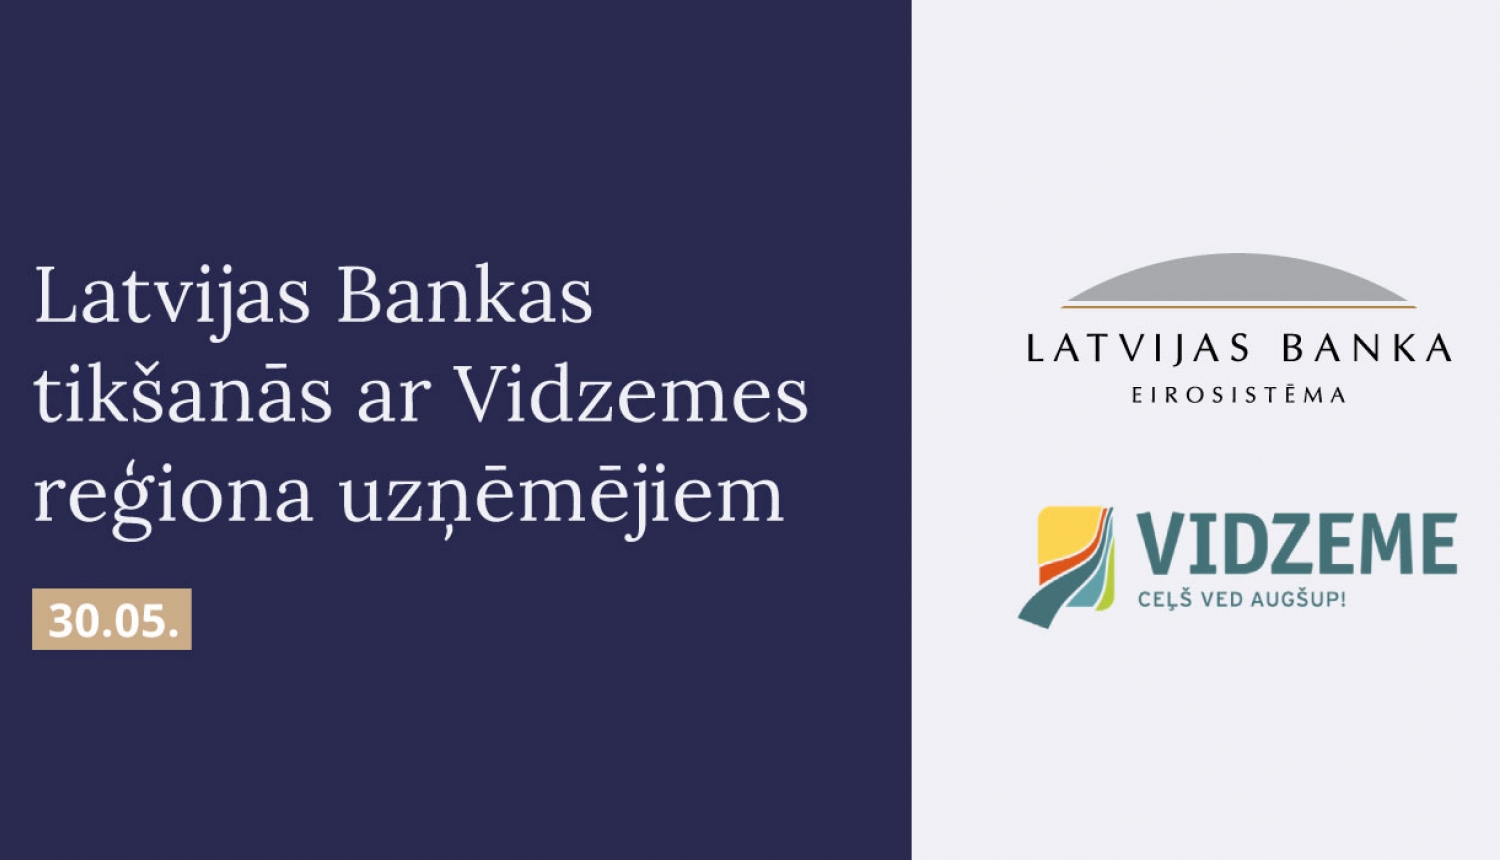 Attēls: Latvijas Banka aicina uzņēmējus un pašvaldību pārstāvjus pārrunāt finanšu pakalpojumu pieejamību Vidzemes reģionā